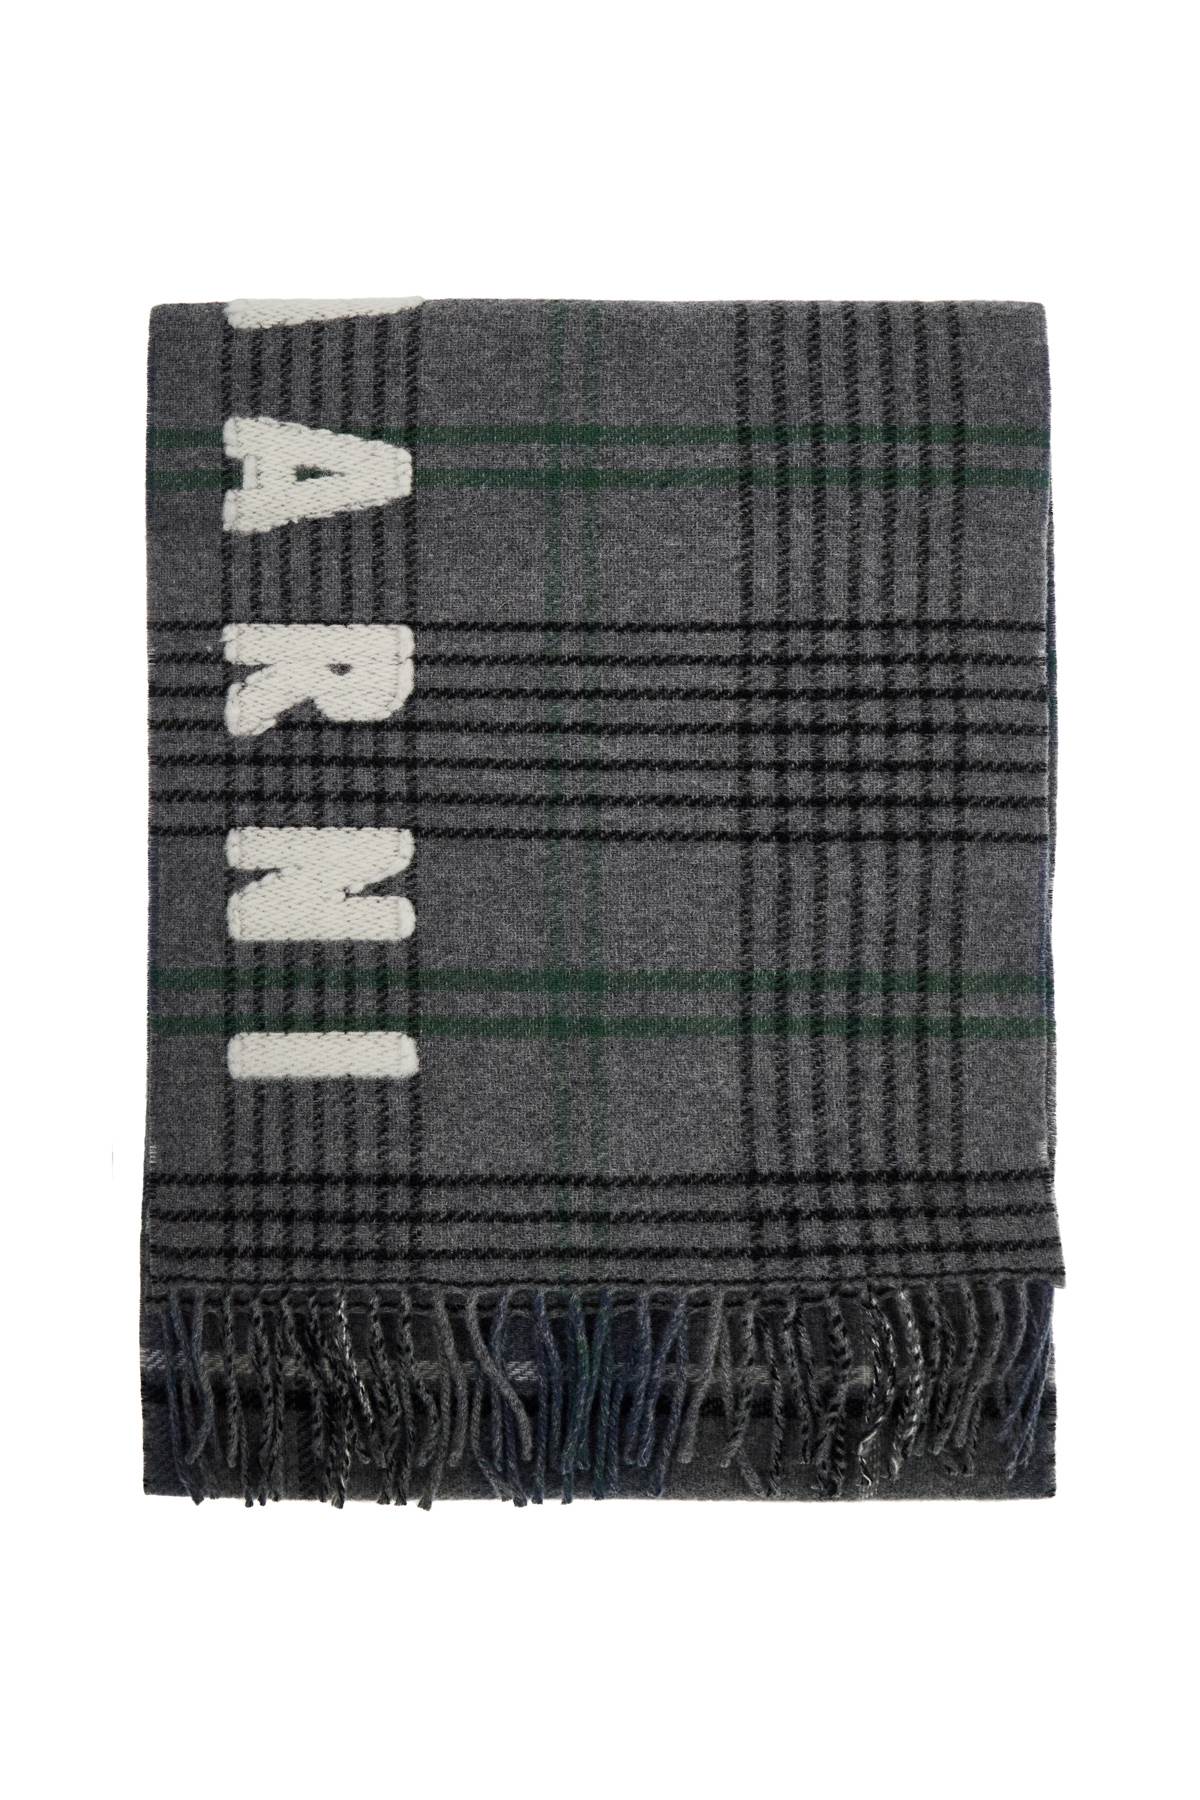 Marni MARNI double check wool scarf in 8